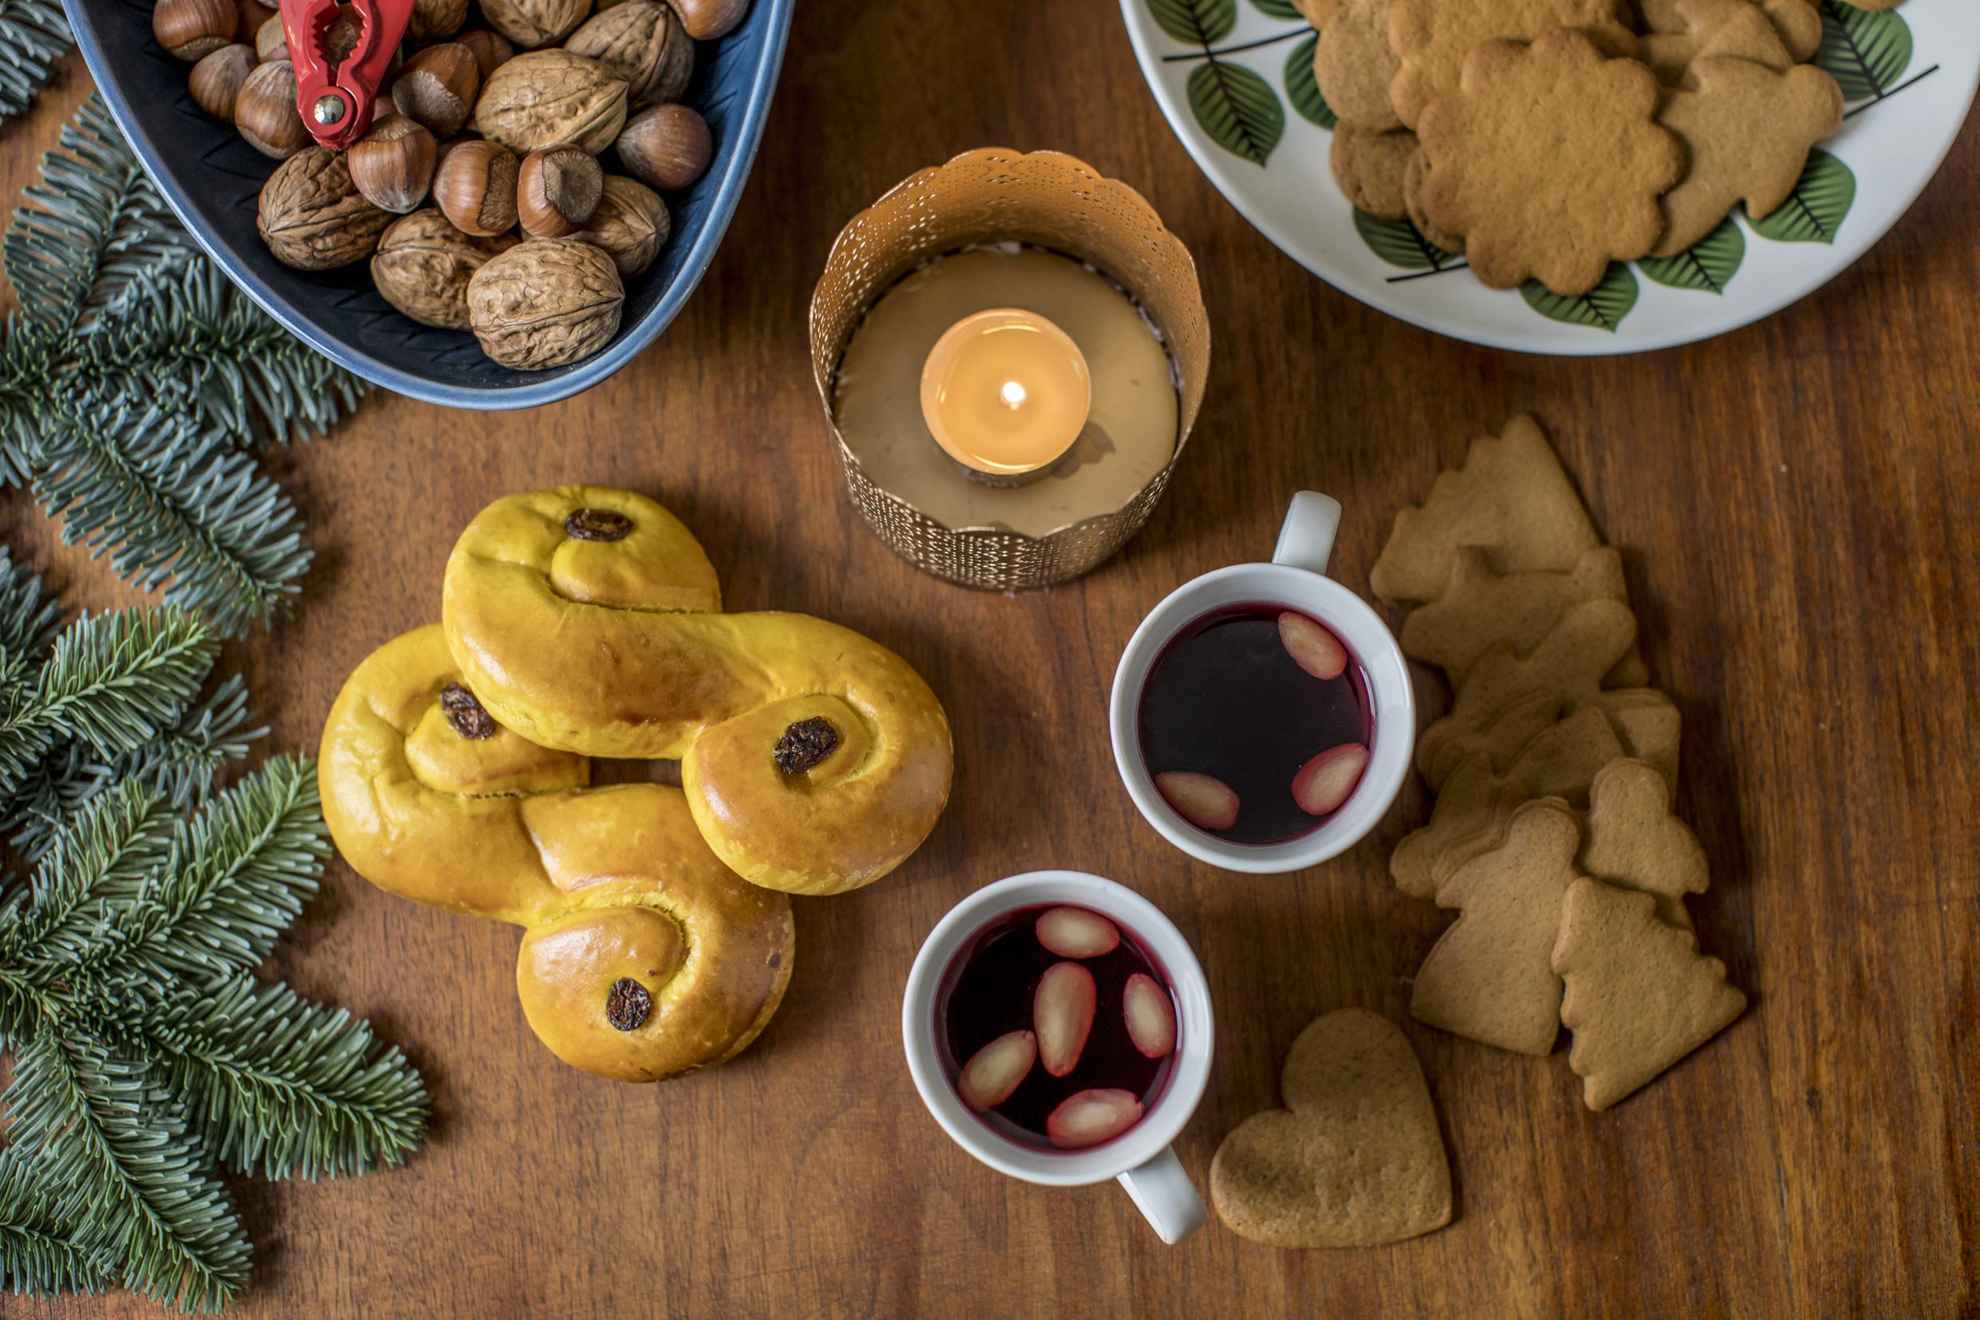 Une table garnie de délices et de décorations de Noël typiquement suédois, de vin chaud, de noix, de biscuits au gingembre, de lussebullar et de branches de sapin.